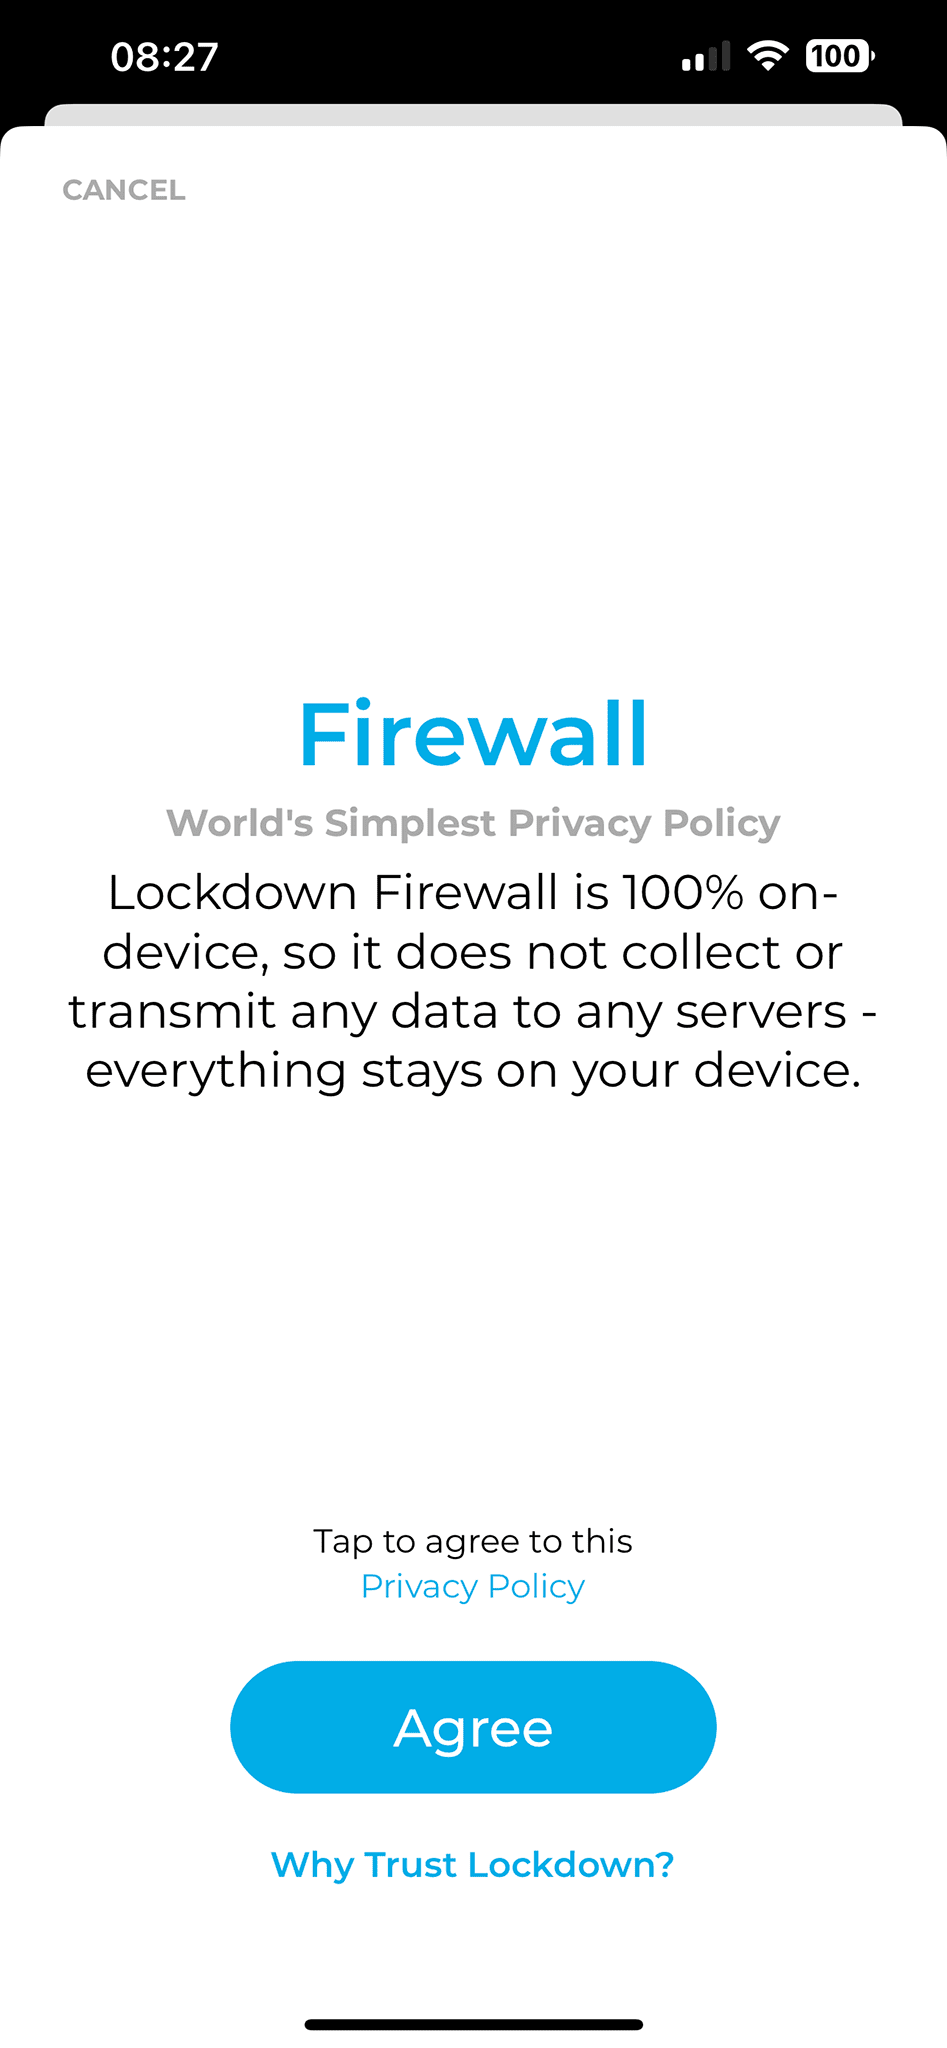 Lockdown Privacy - Pierwszy ekran po aktywowaniu firewalla